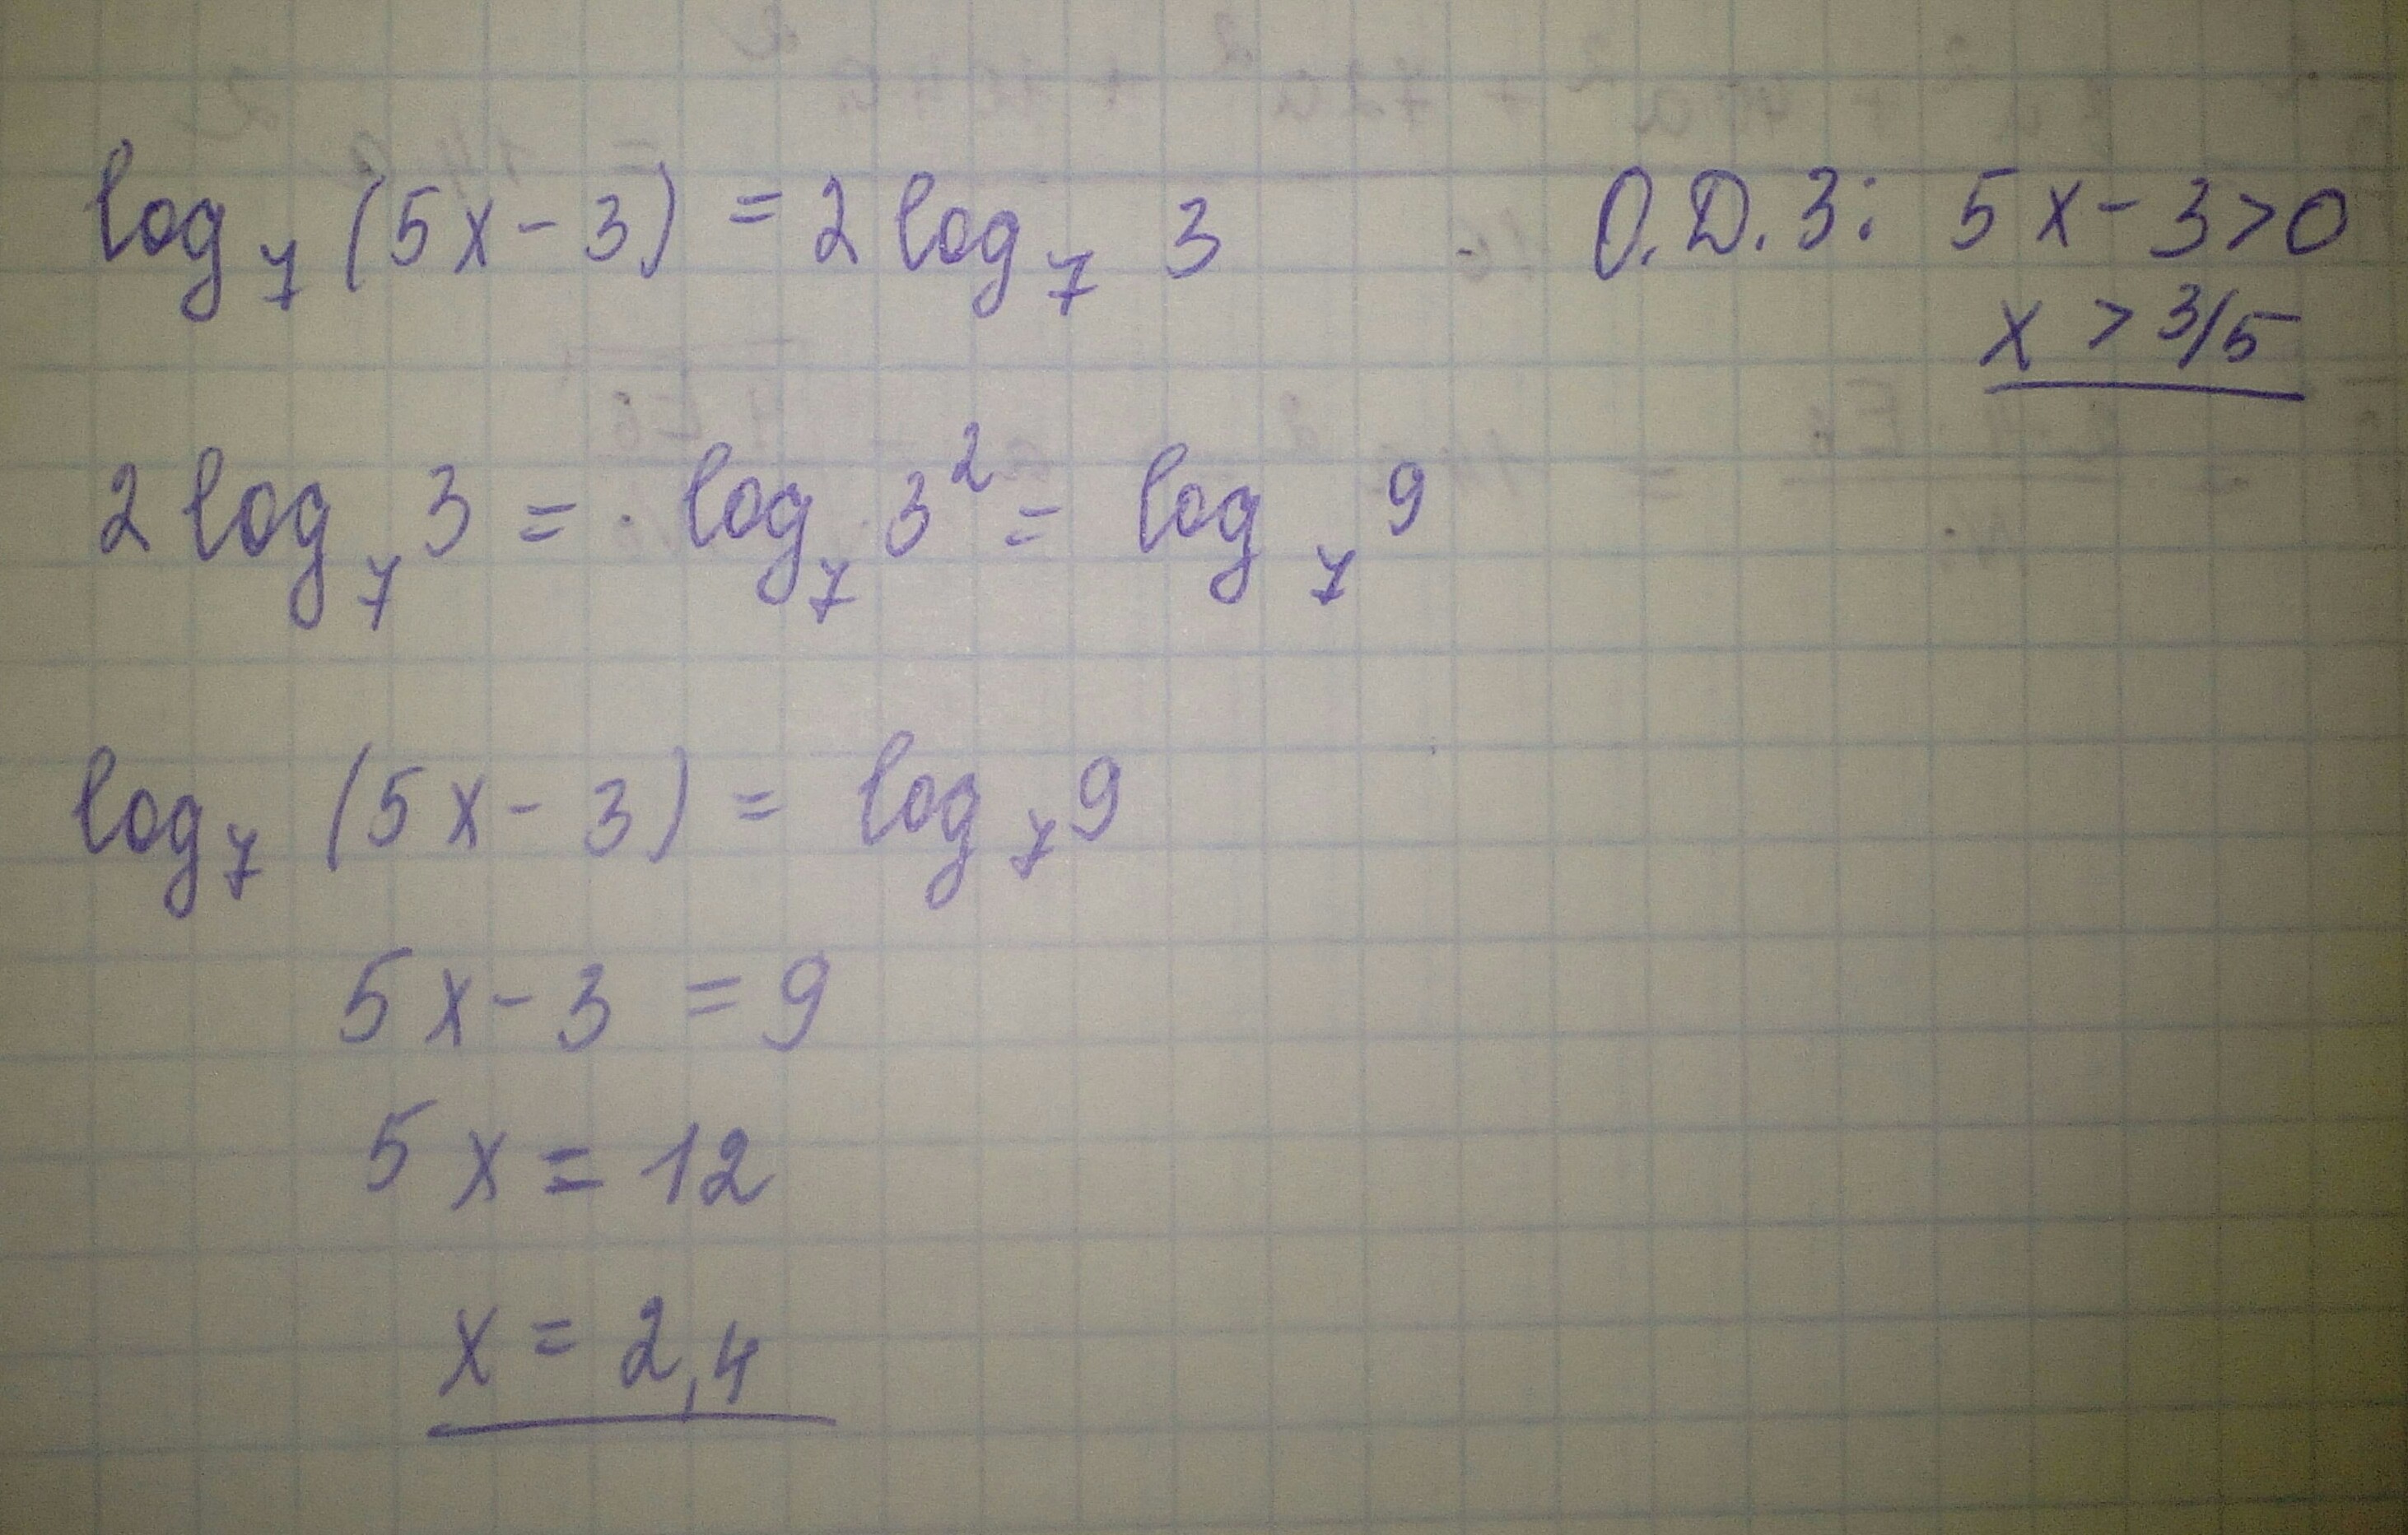 7x 9 найти корень. Найдите корни уравнения log5 (x-1)=2. Найдите корень уравнения Лог. Log(2)(x^2-5)*(log(3)(7-x))^2+3*log(2)(x^2-5)-log(3)(7-x)-6=0. Найдите корень уравнения log4 2 5x+7 3.